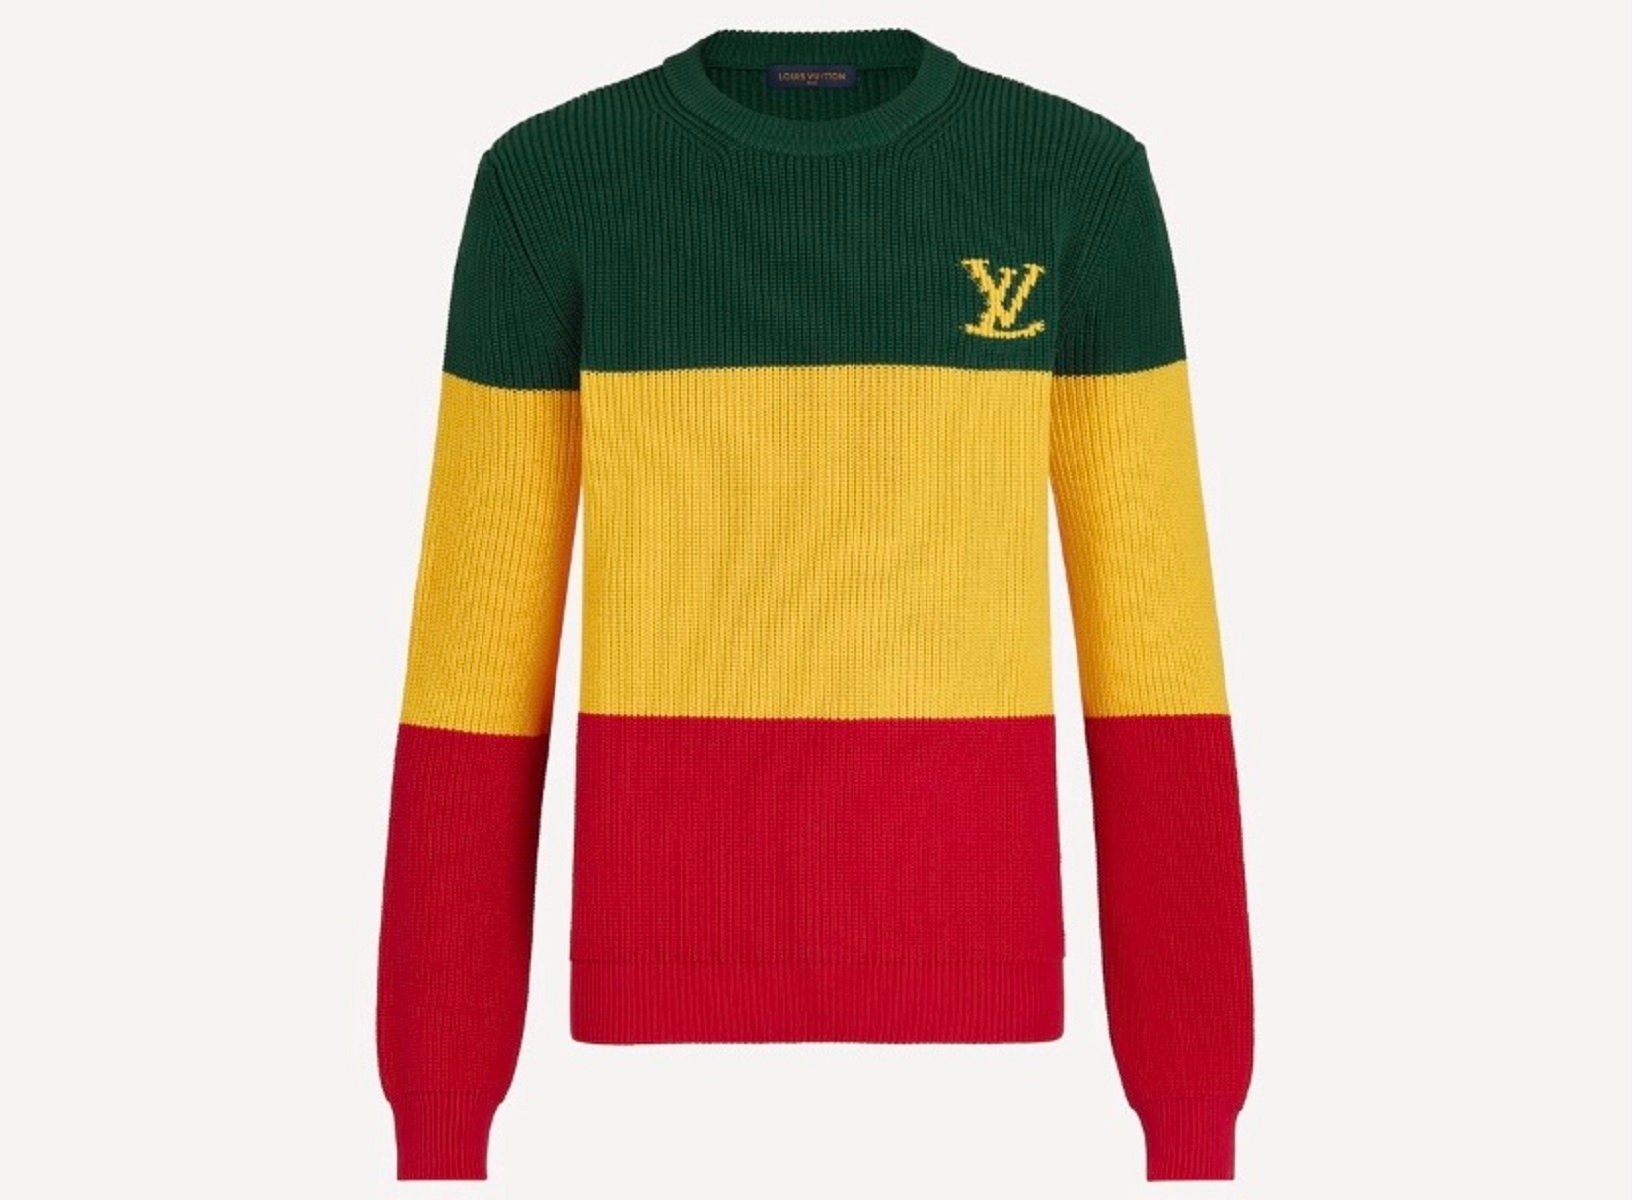 Louis Vuitton aclara que el suéter que la puso en controversia no está inspirado en Jamaica